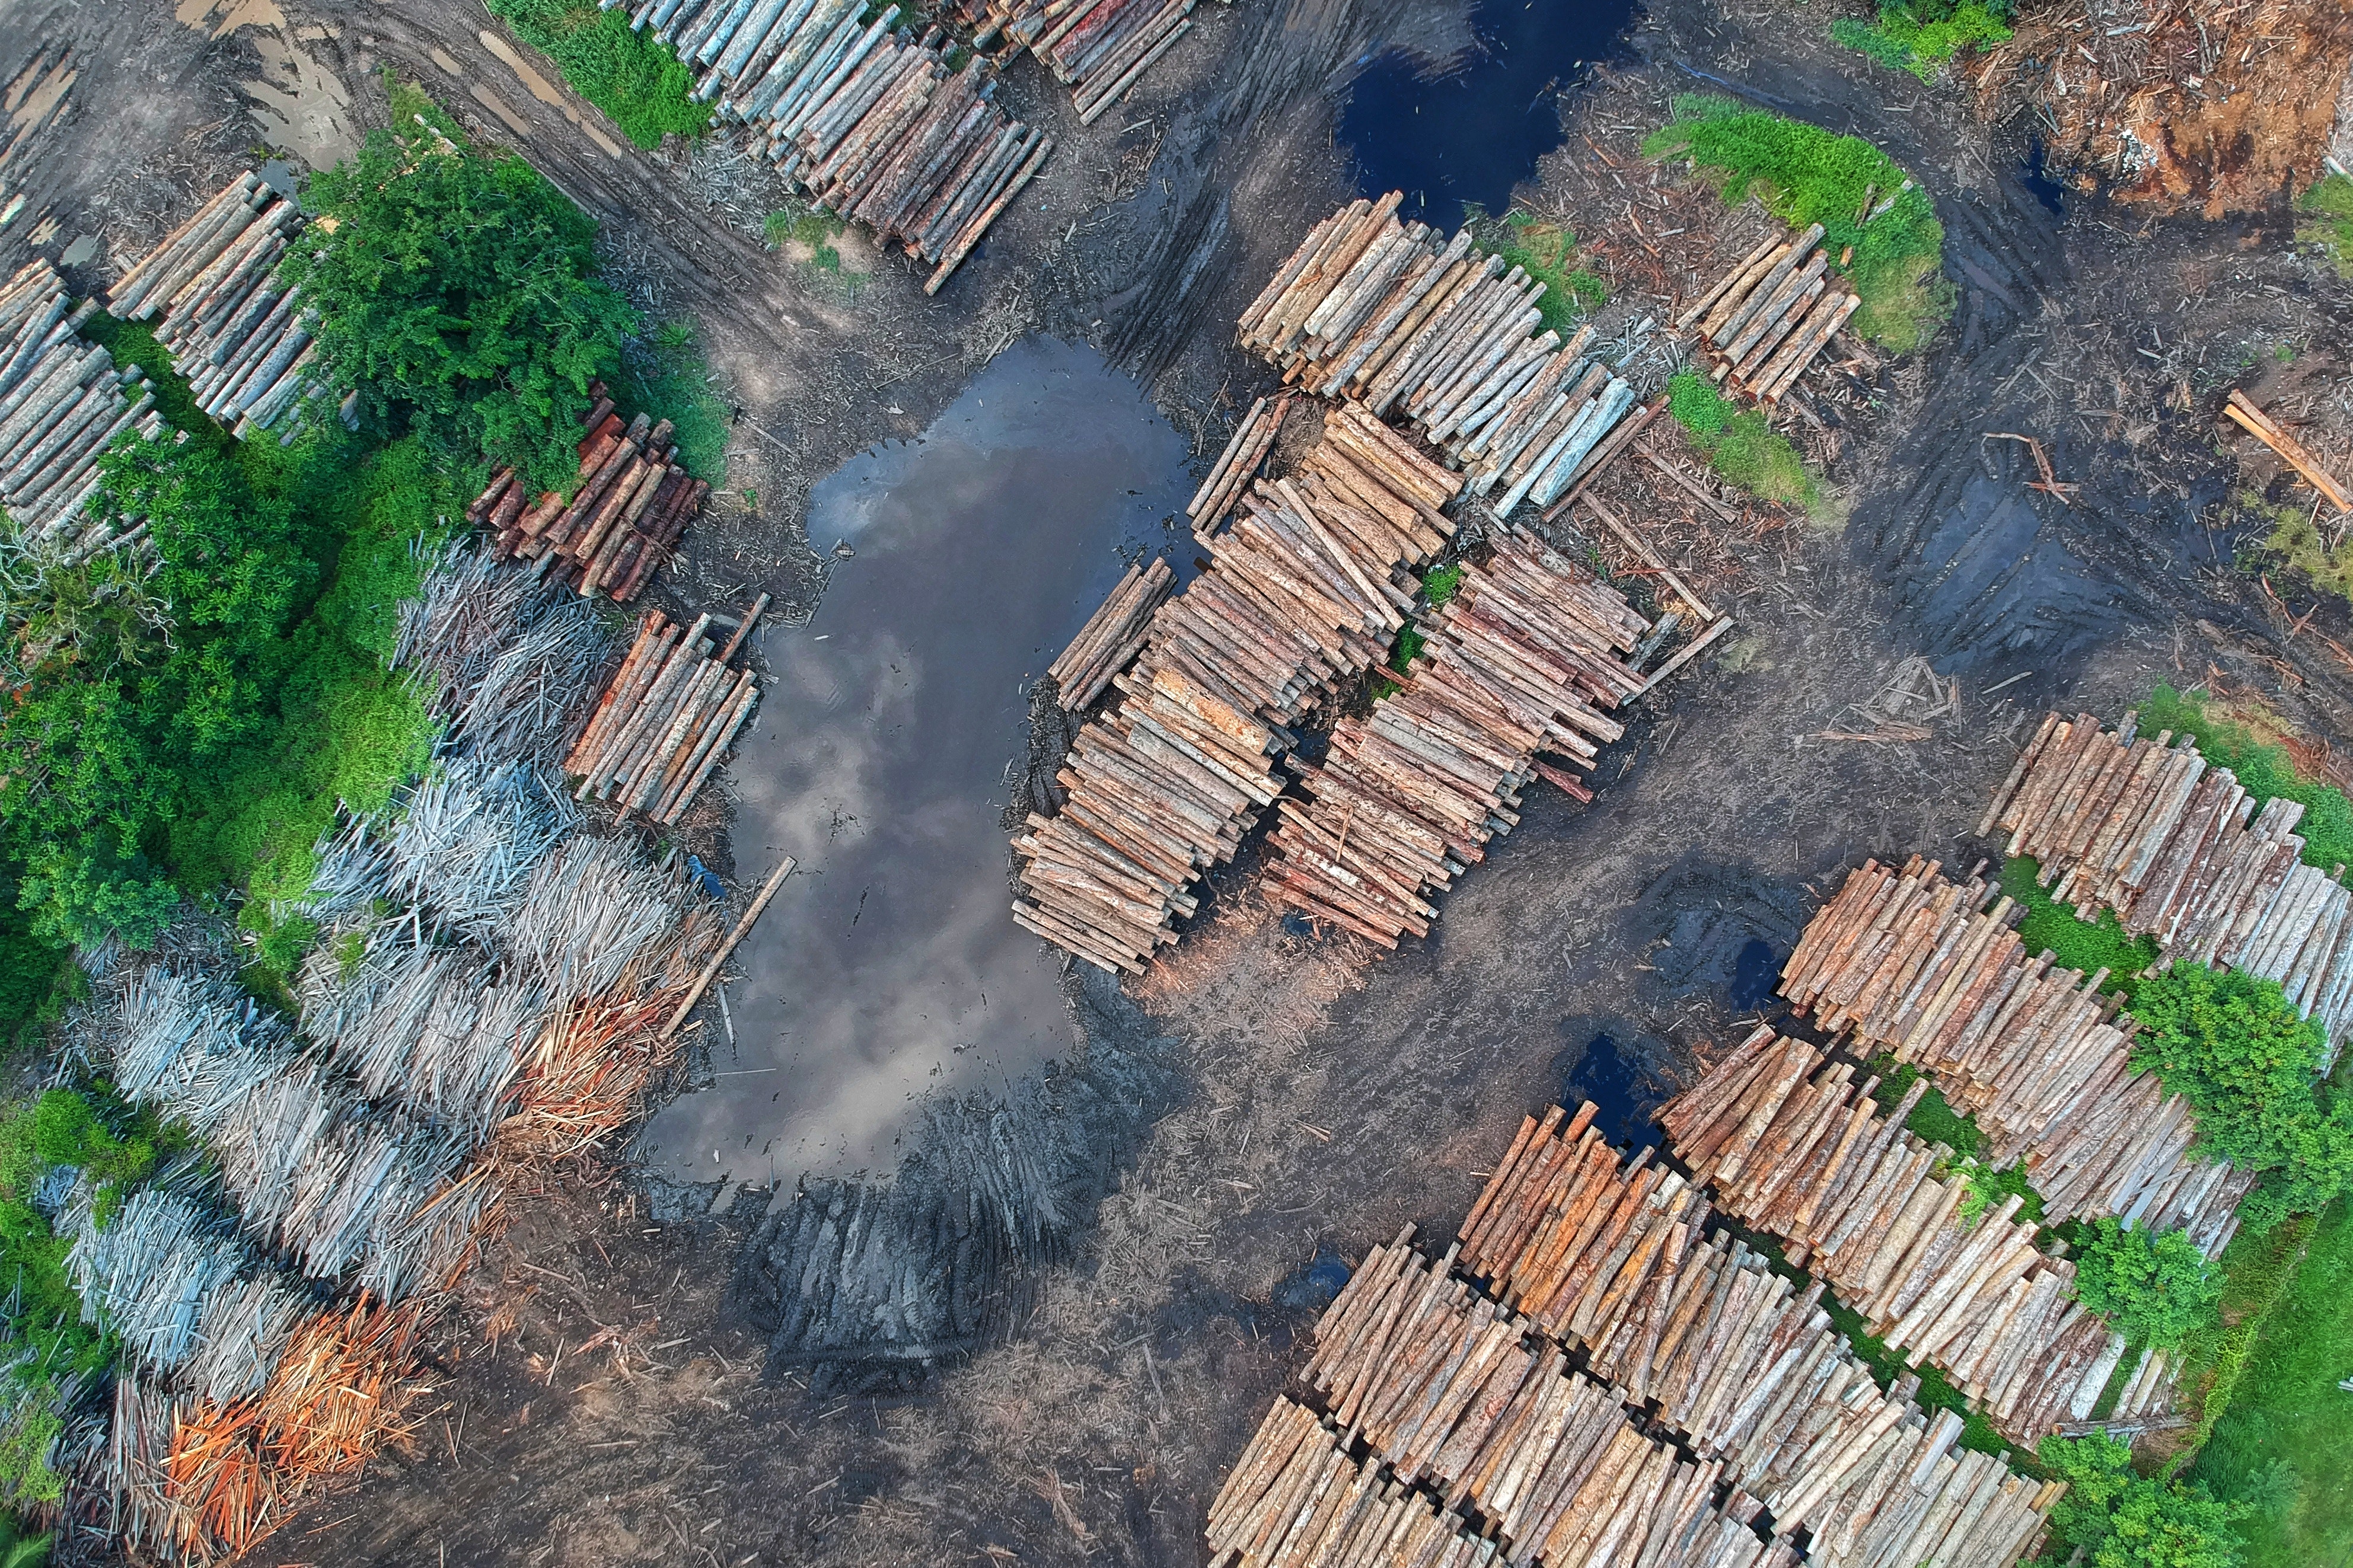 15 milliards d’arbres sont perdus chaque année dans le monde (source IPBES). Crédit photo : Pok Rie / Pexels